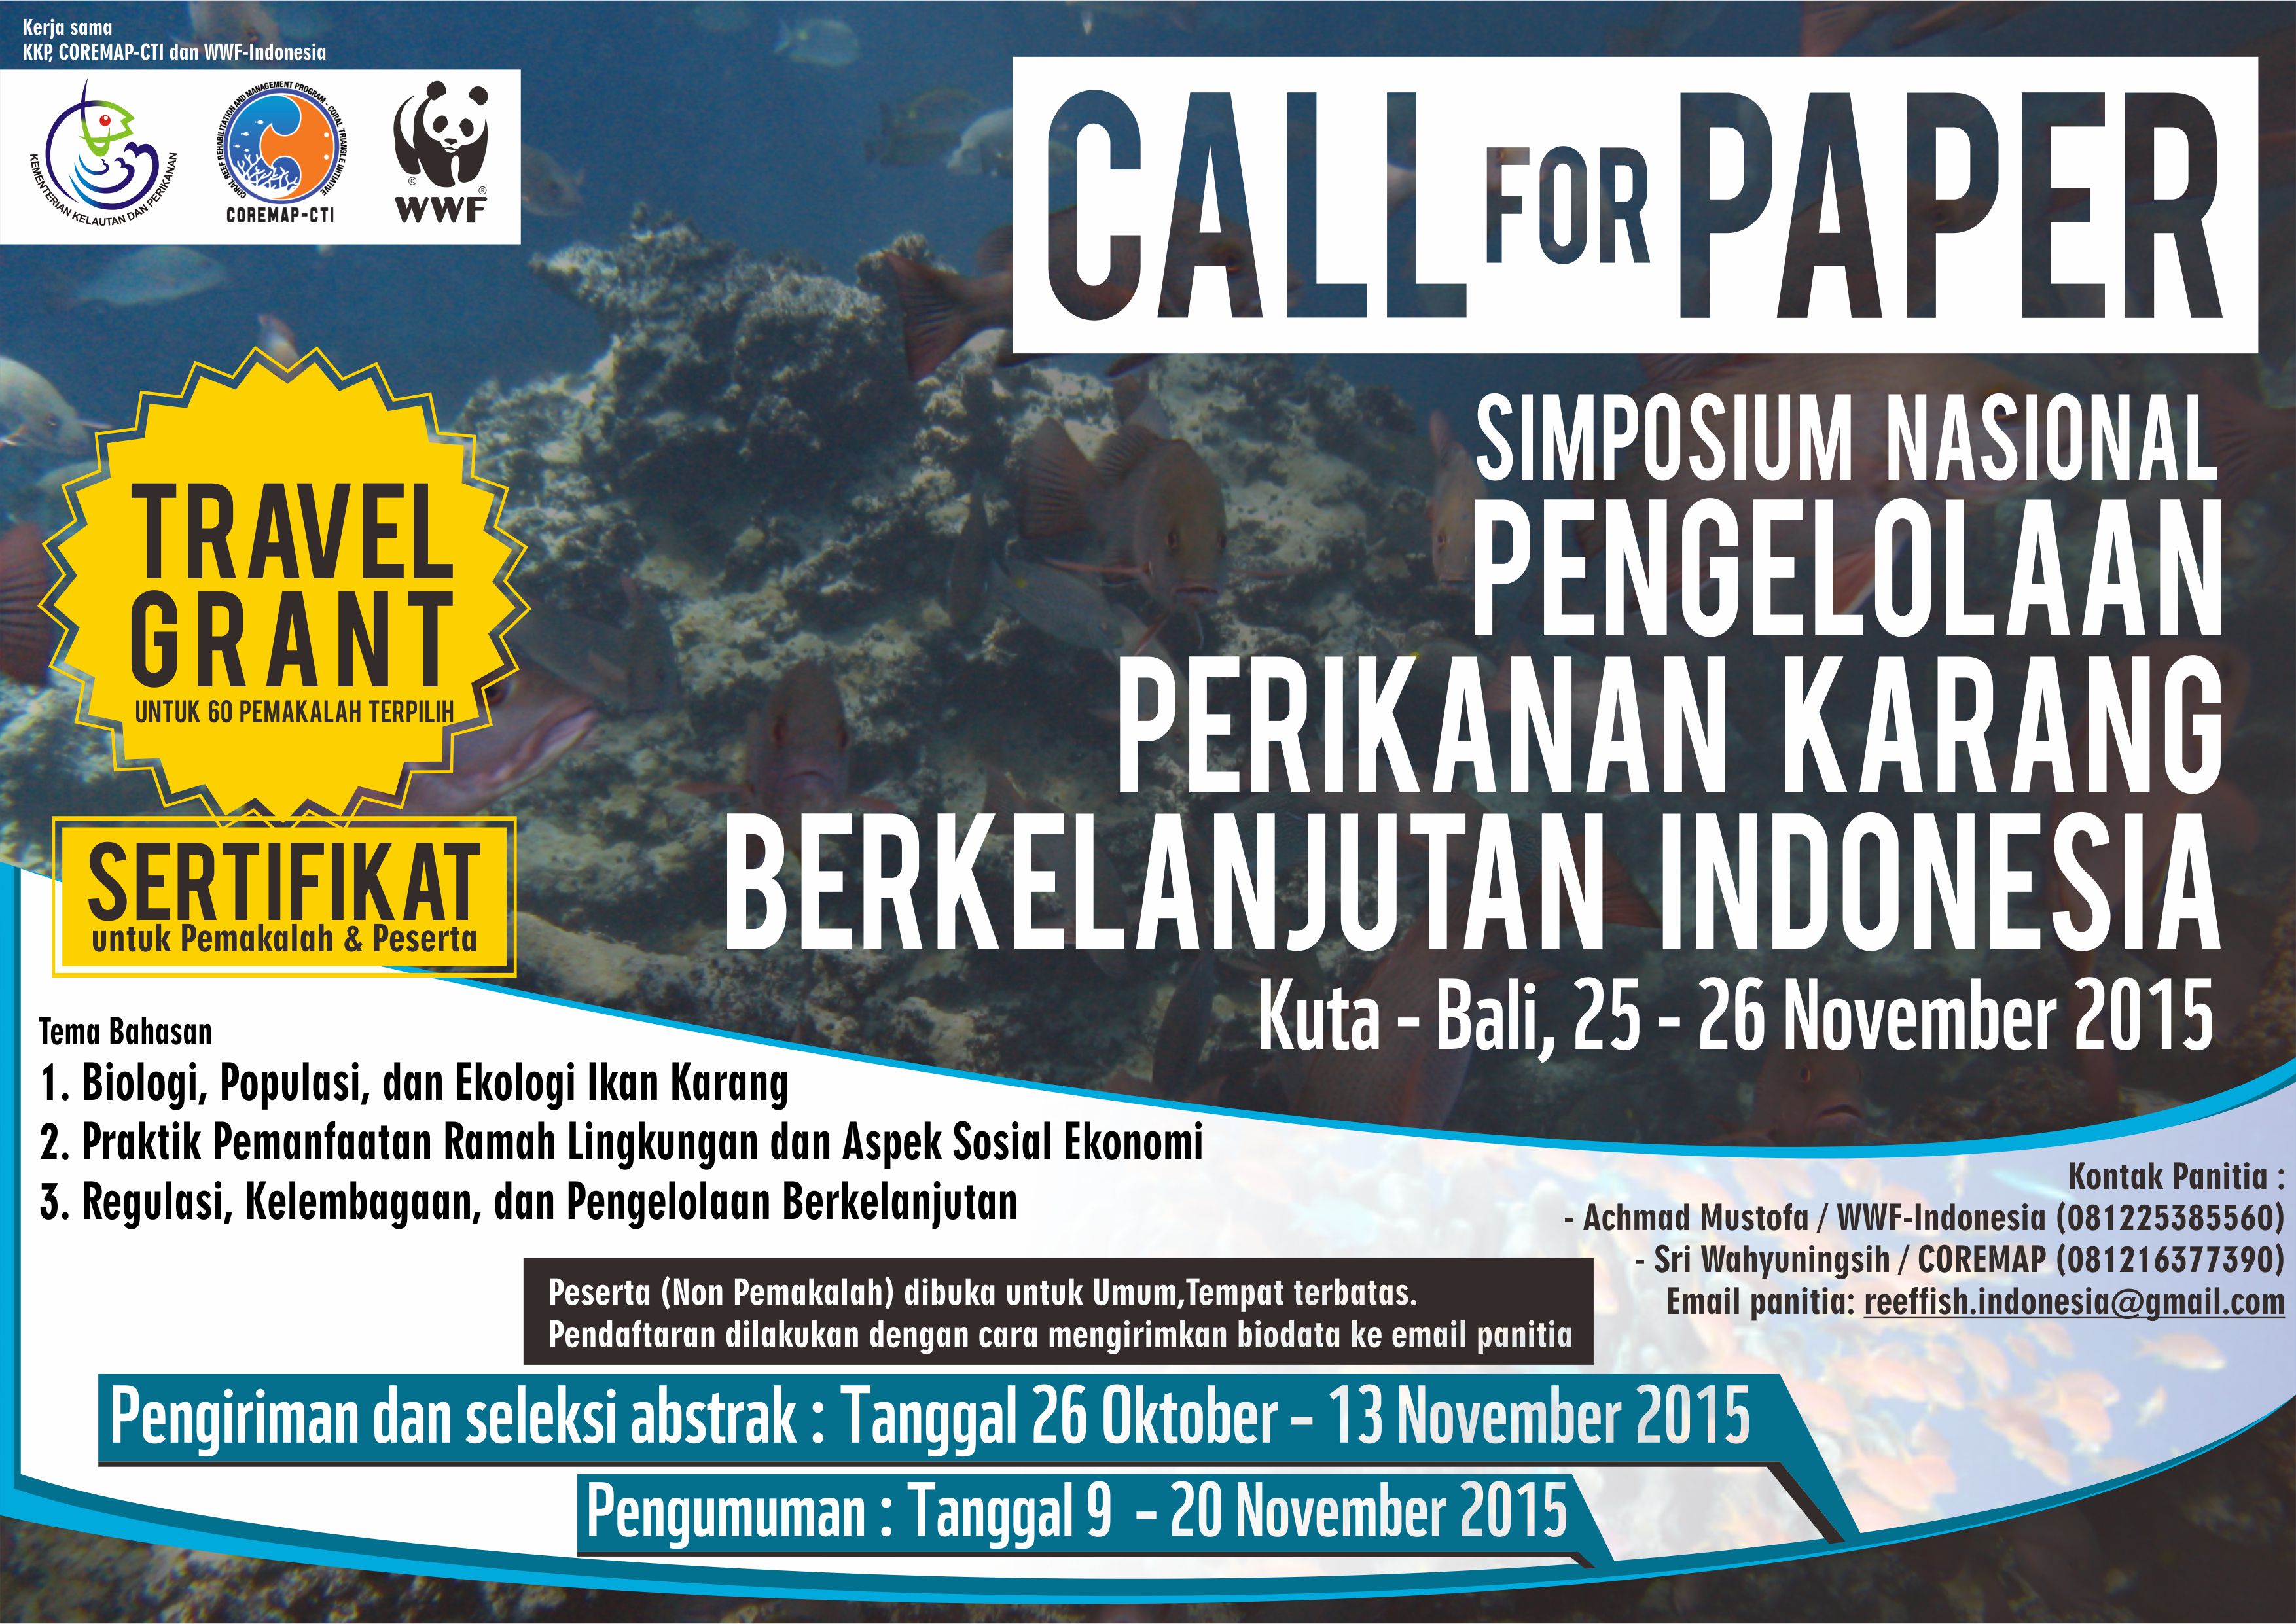 Simposium Nasional Akan Kaji Pengelolaan Perikanan Karang Berkelanjutan di Indonesia